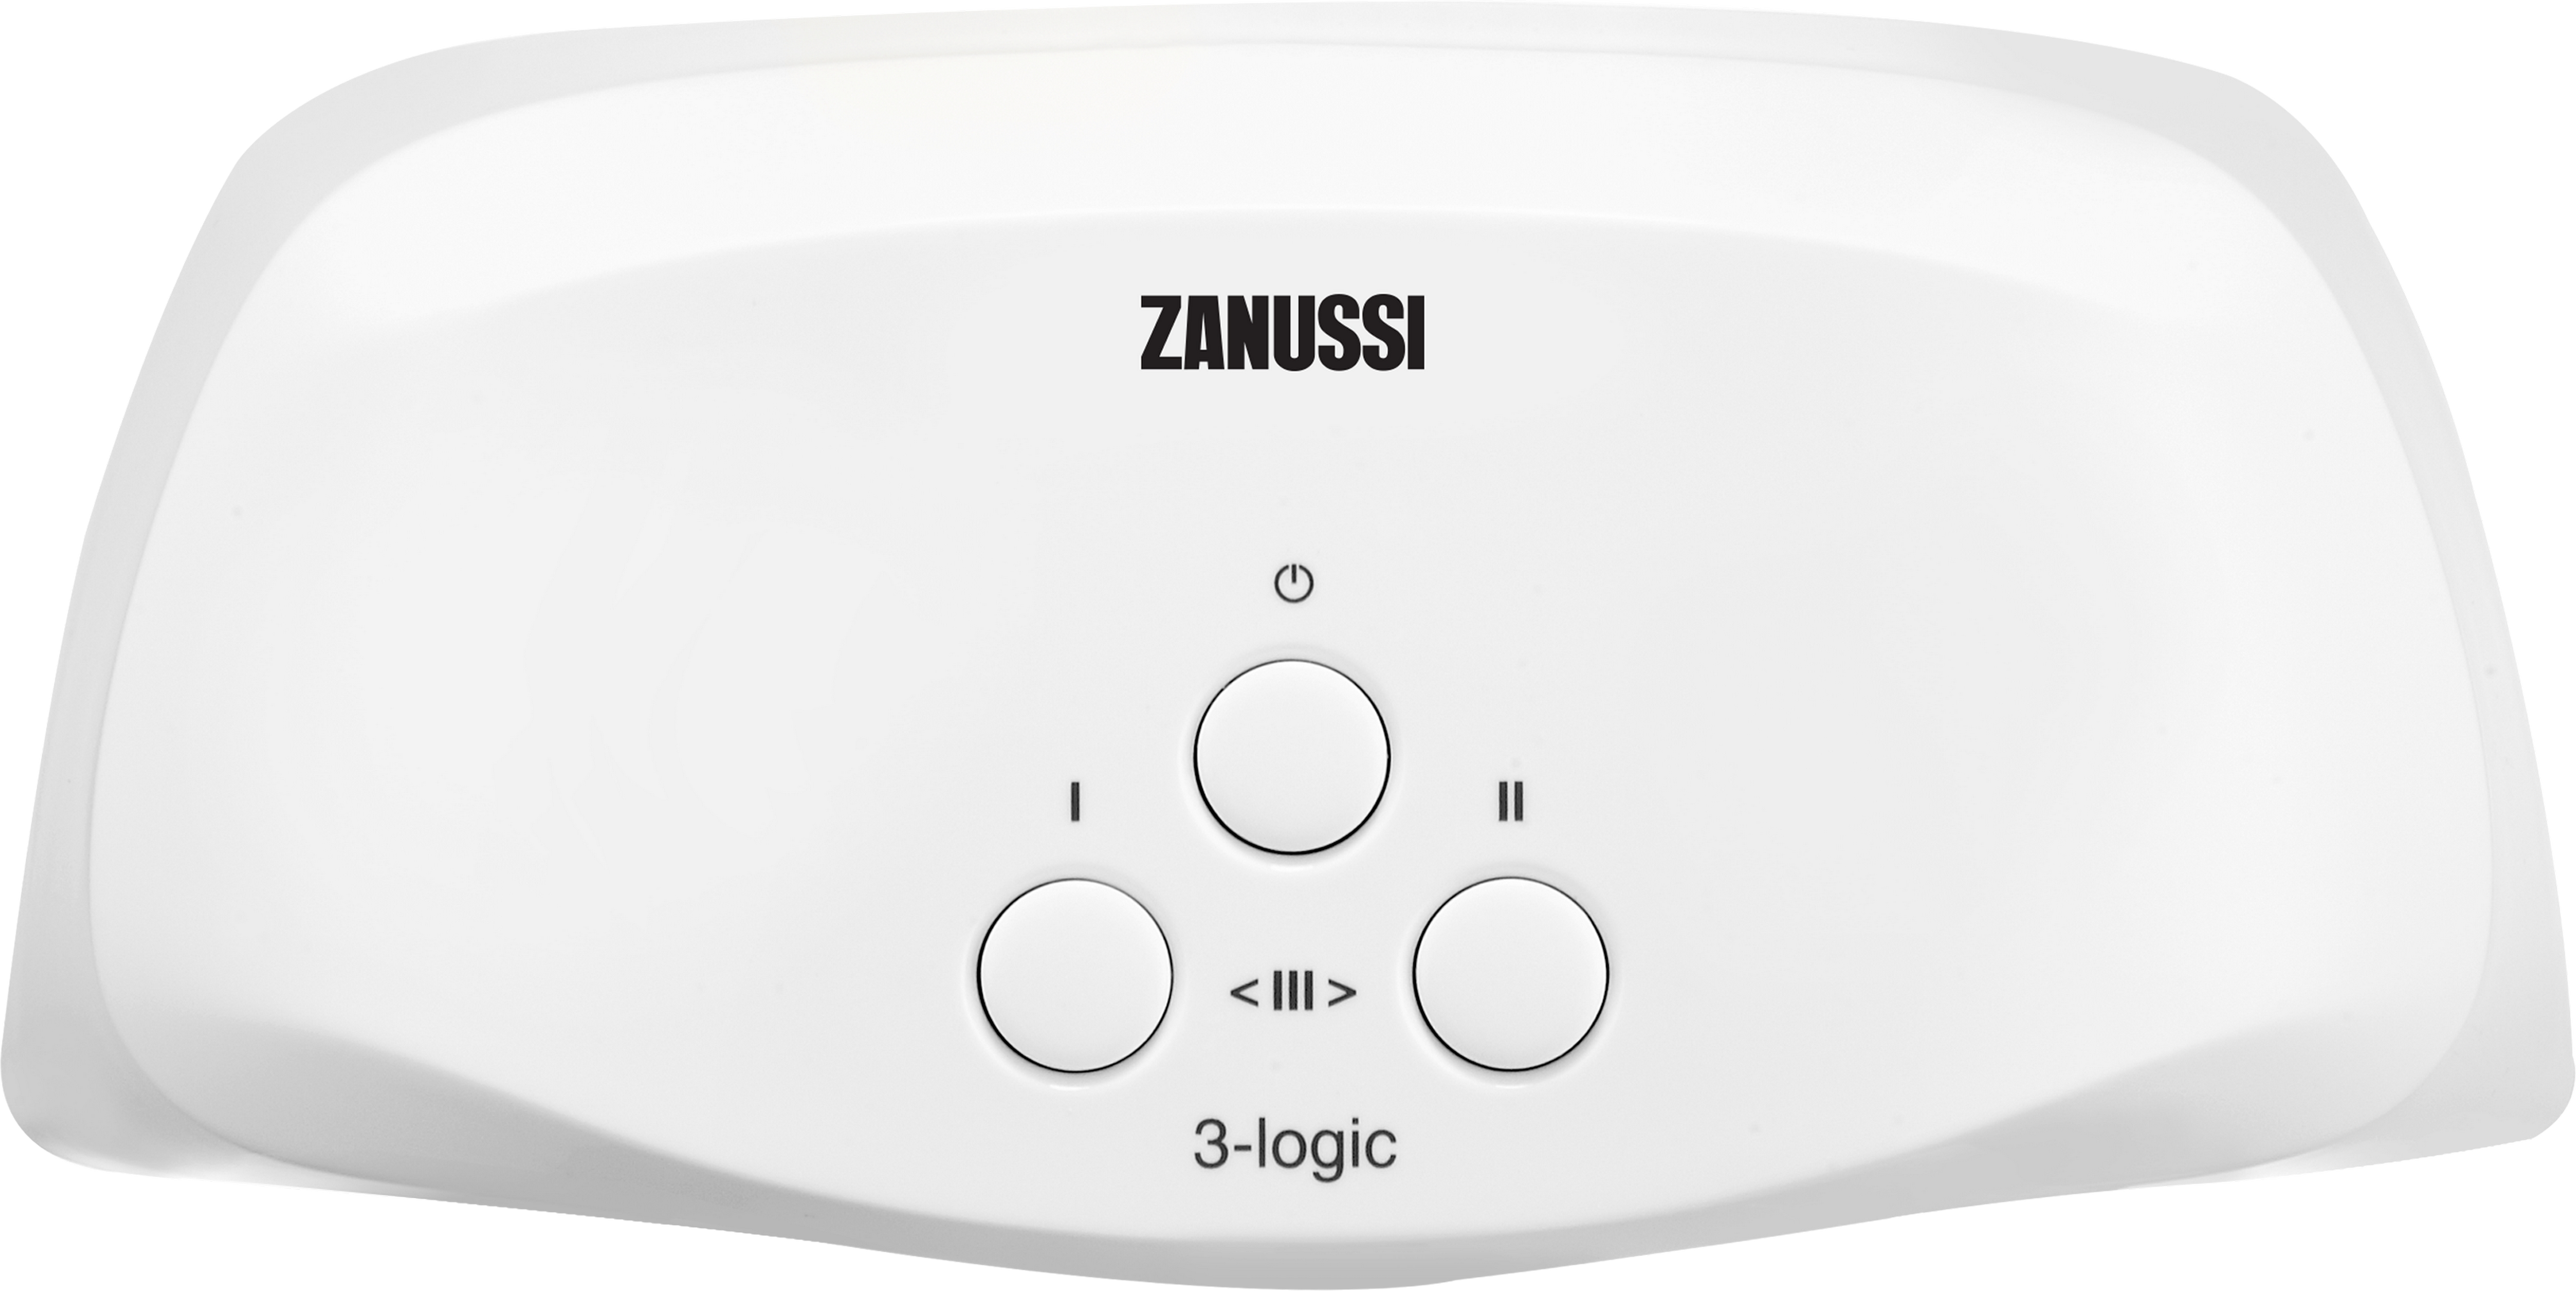 Характеристики кран zanussi водонагреватель Zanussi 3-logic T (5,5 кВт)